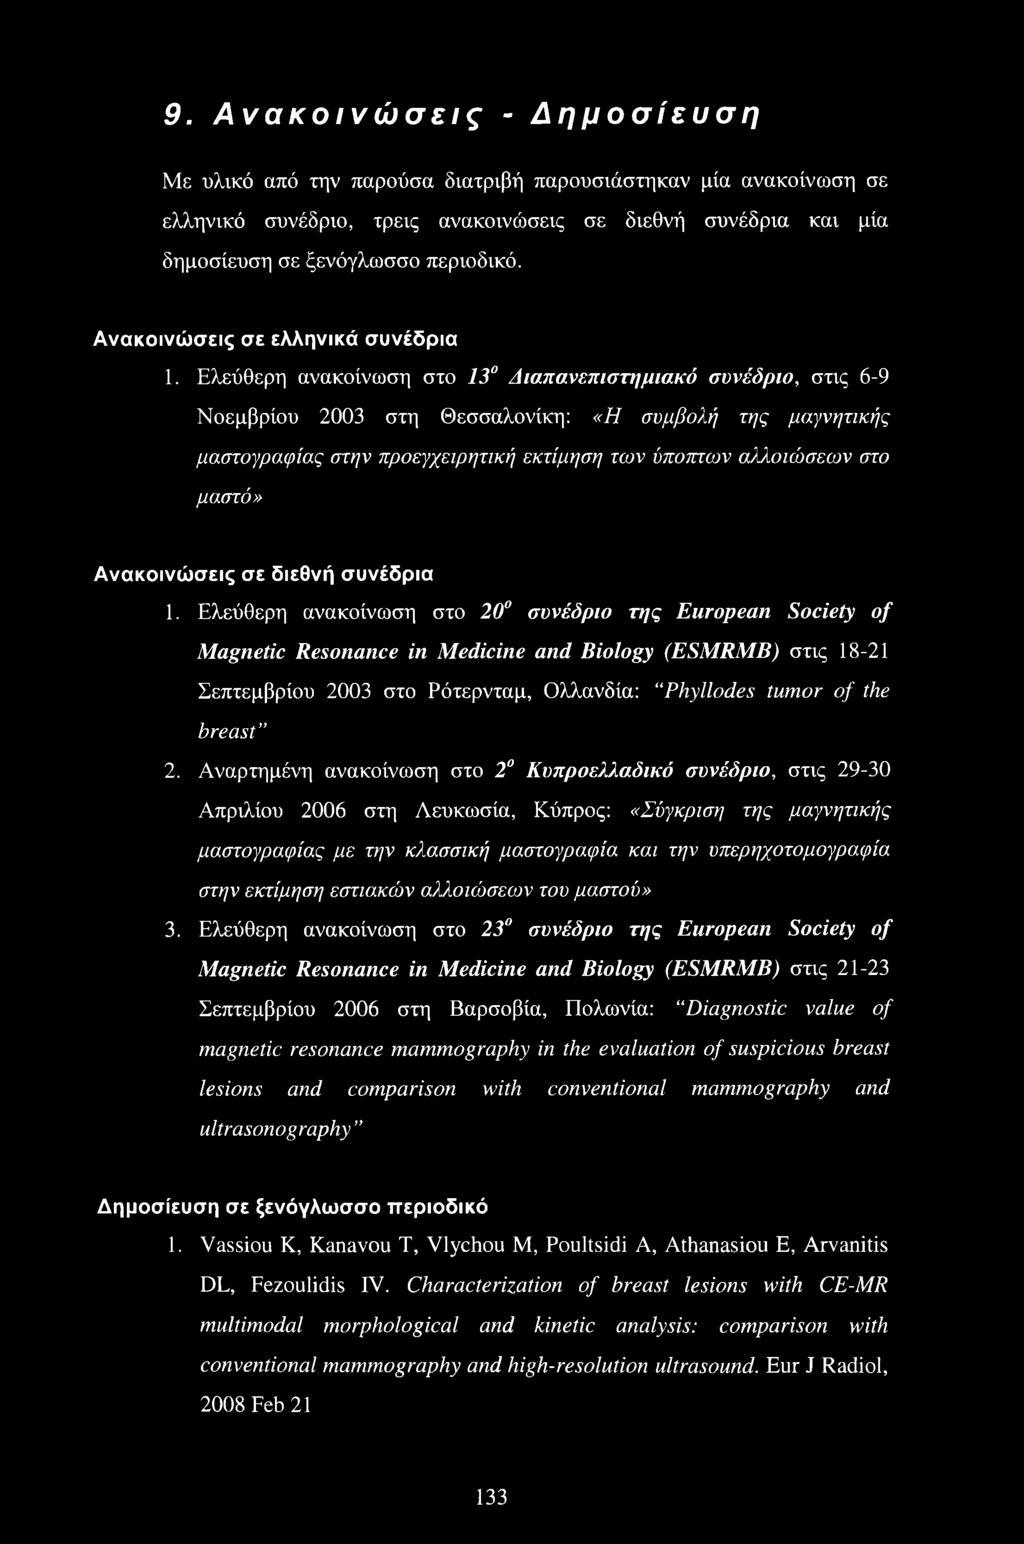 Ελεύθερη ανακοίνωση στο 13 Διαπανεπιστημιακό συνέδριο, στις 6-9 Νοεμβρίου 2003 στη Θεσσαλονίκη: «Η συμβολή της μαγνητικής μαστογραφίας στην προεγχειρητική εκτίμηση των ύποπτων αλλοιώσεων στο μαστό»